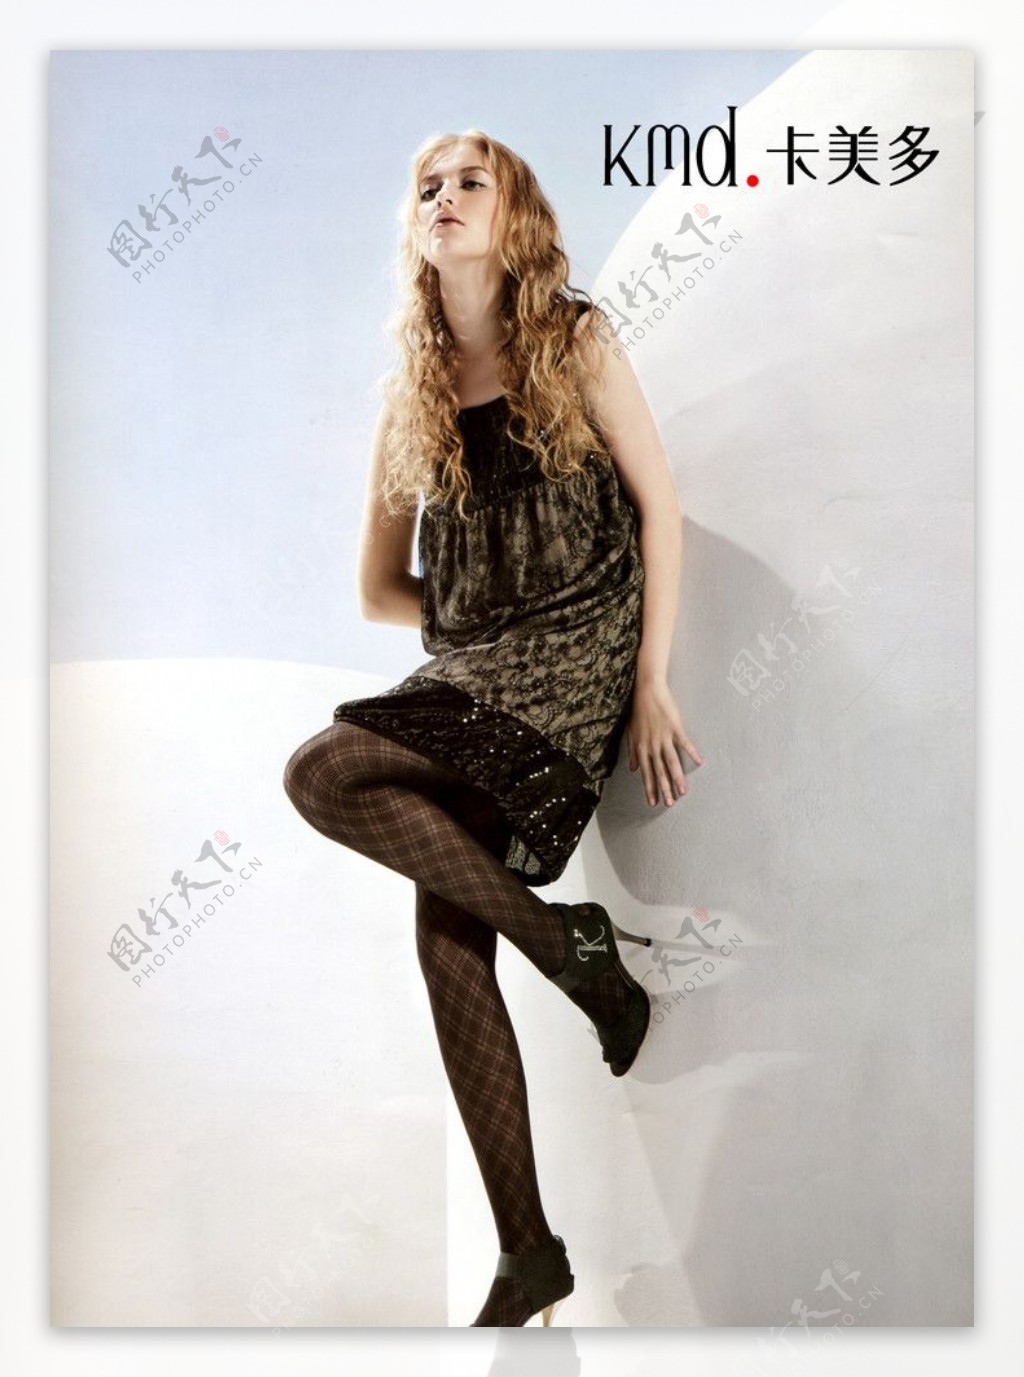 卡美多LOGO形象代言金发女郎时尚超短裙个性凉鞋新品600DPIJPG图片